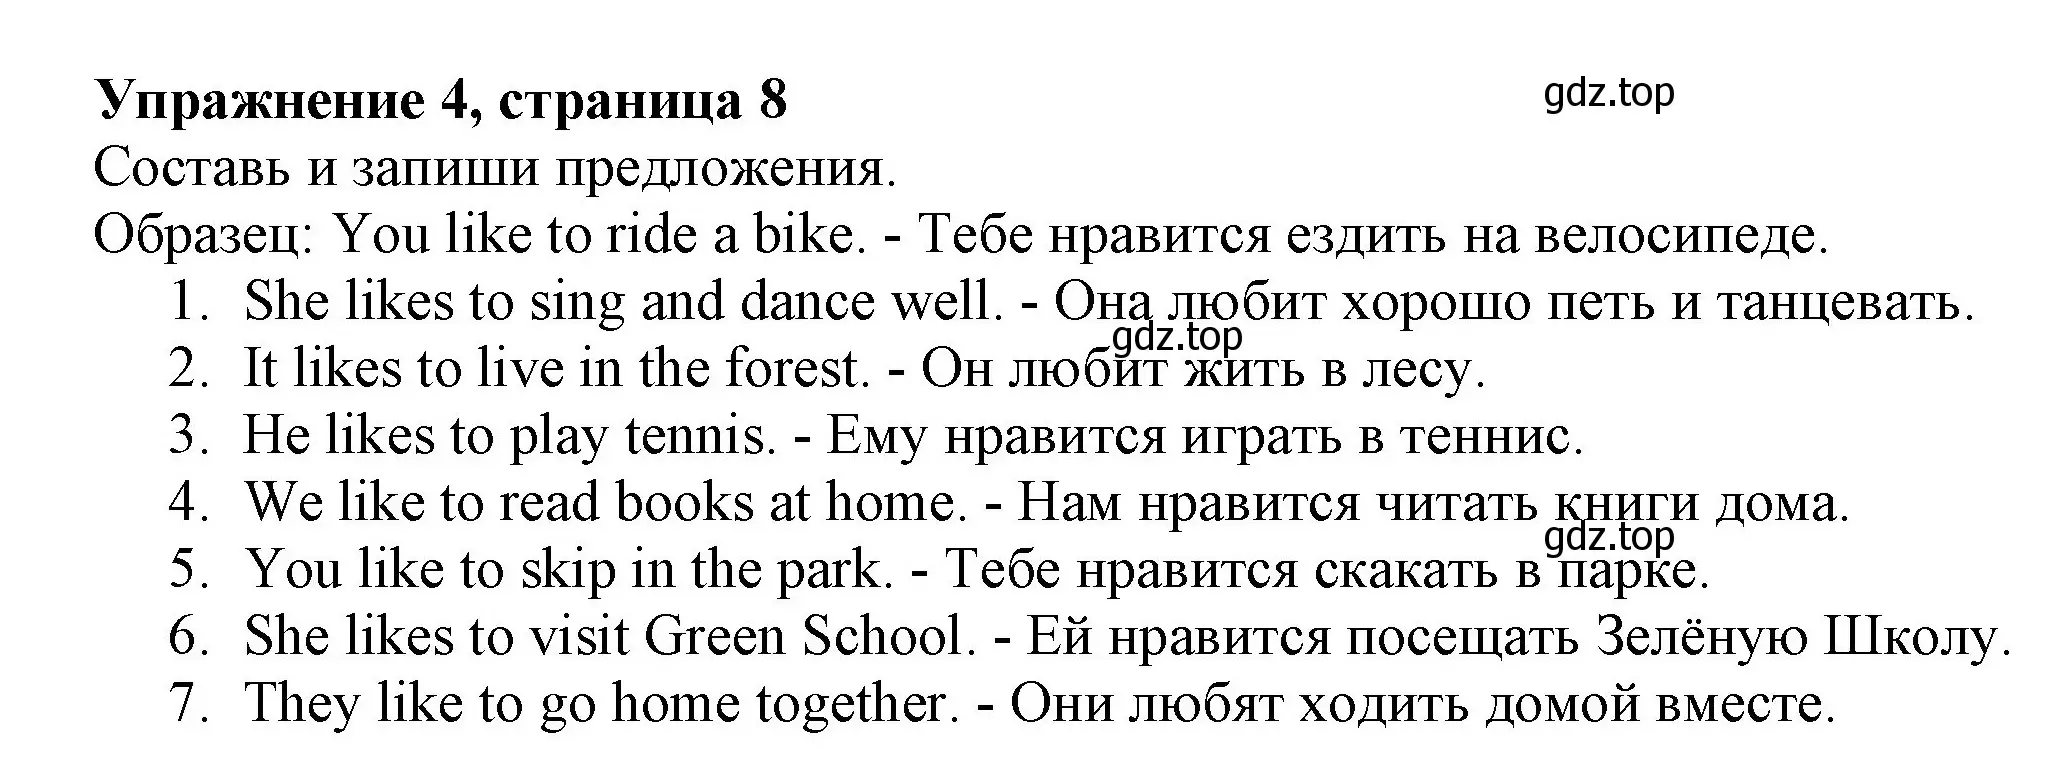 Решение номер 4 (страница 8) гдз по английскому языку 3 класс Биболетова, Денисенко, рабочая тетрадь